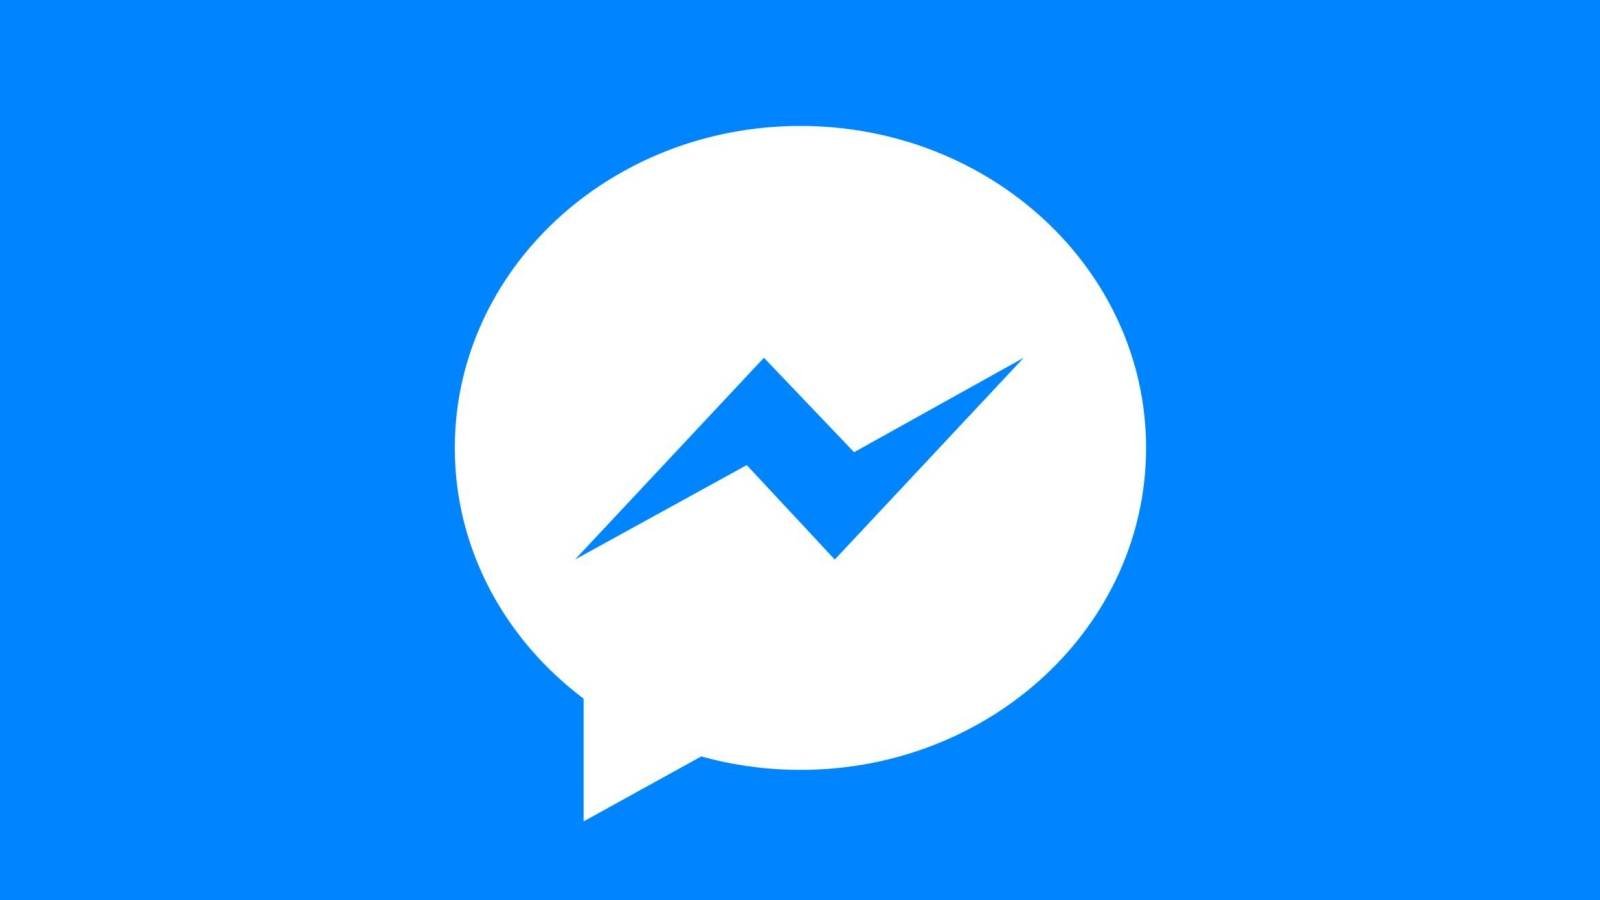 Lanzada la nueva actualización de Facebook Messenger, con qué cambios llega a los Teléfonos